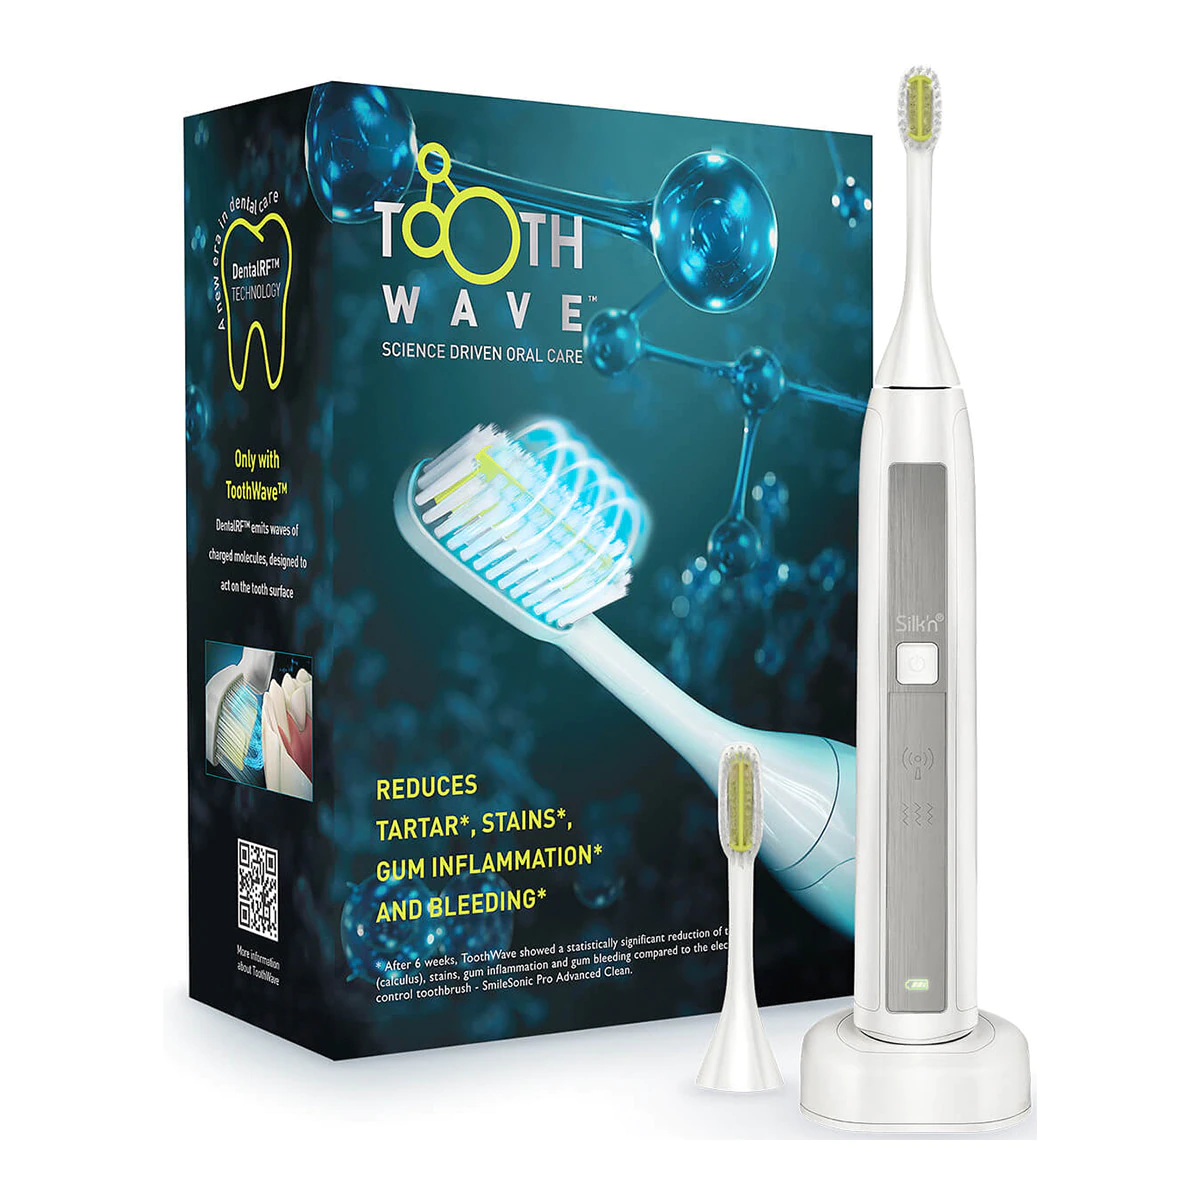 Cepillo de dientes Silk’n Toothwave